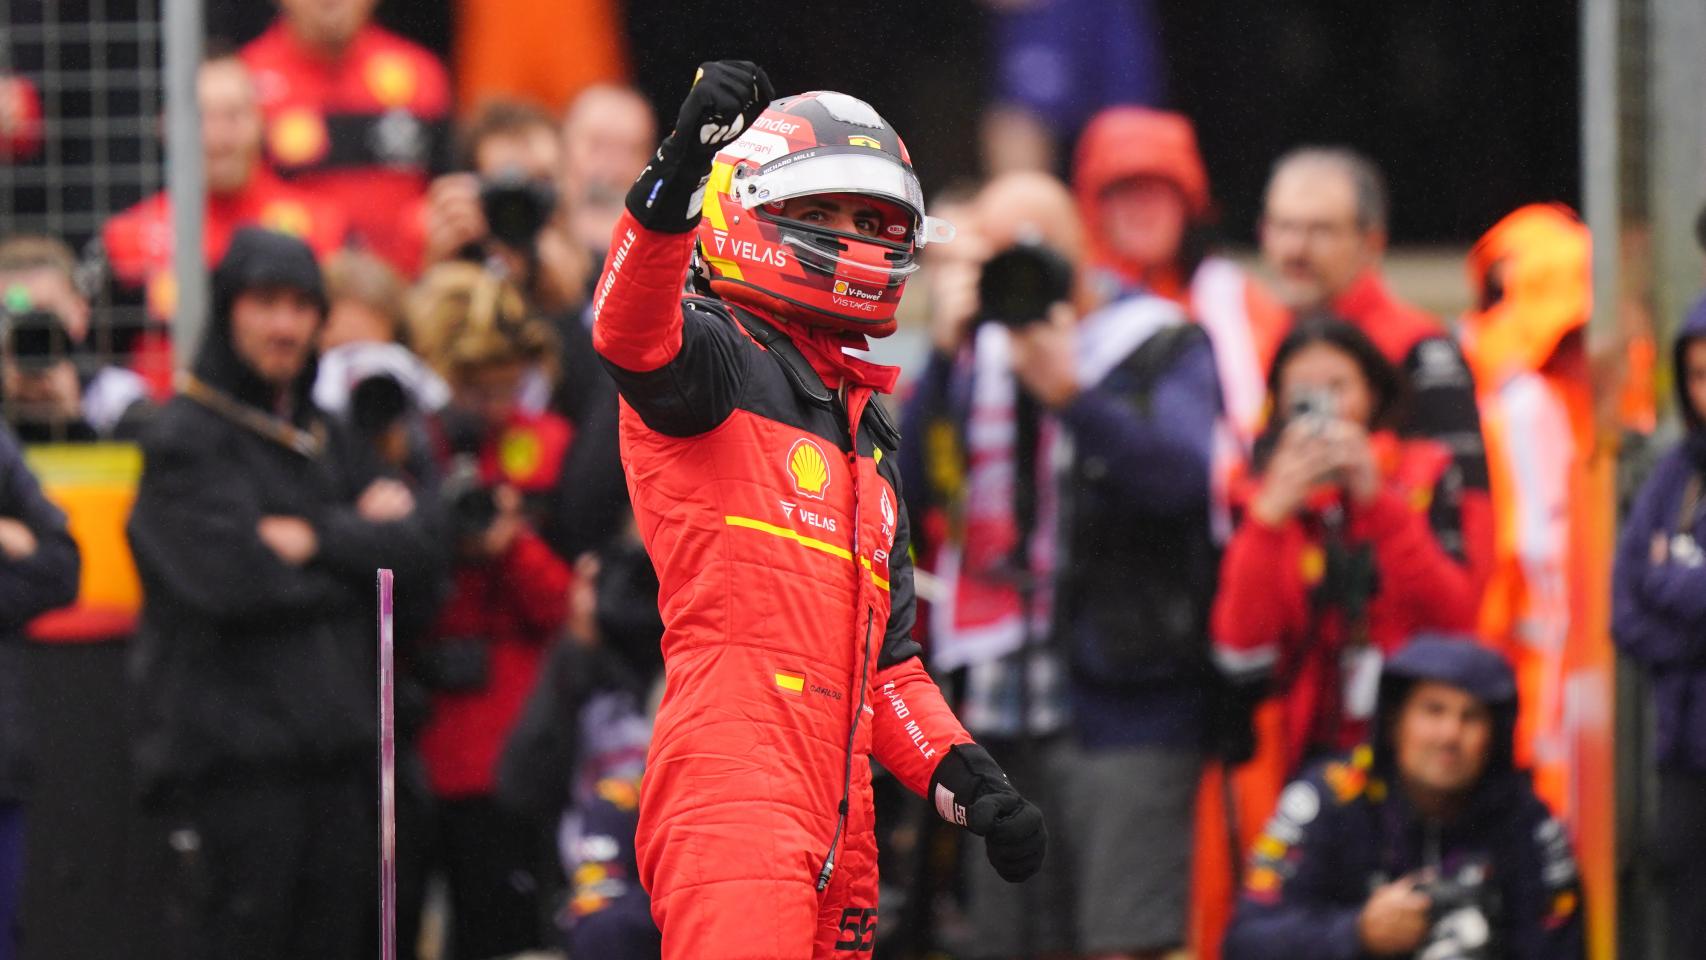 Carlos tras su primera pole en F1: "Hoy toca por fin, mañana podemos ganar"